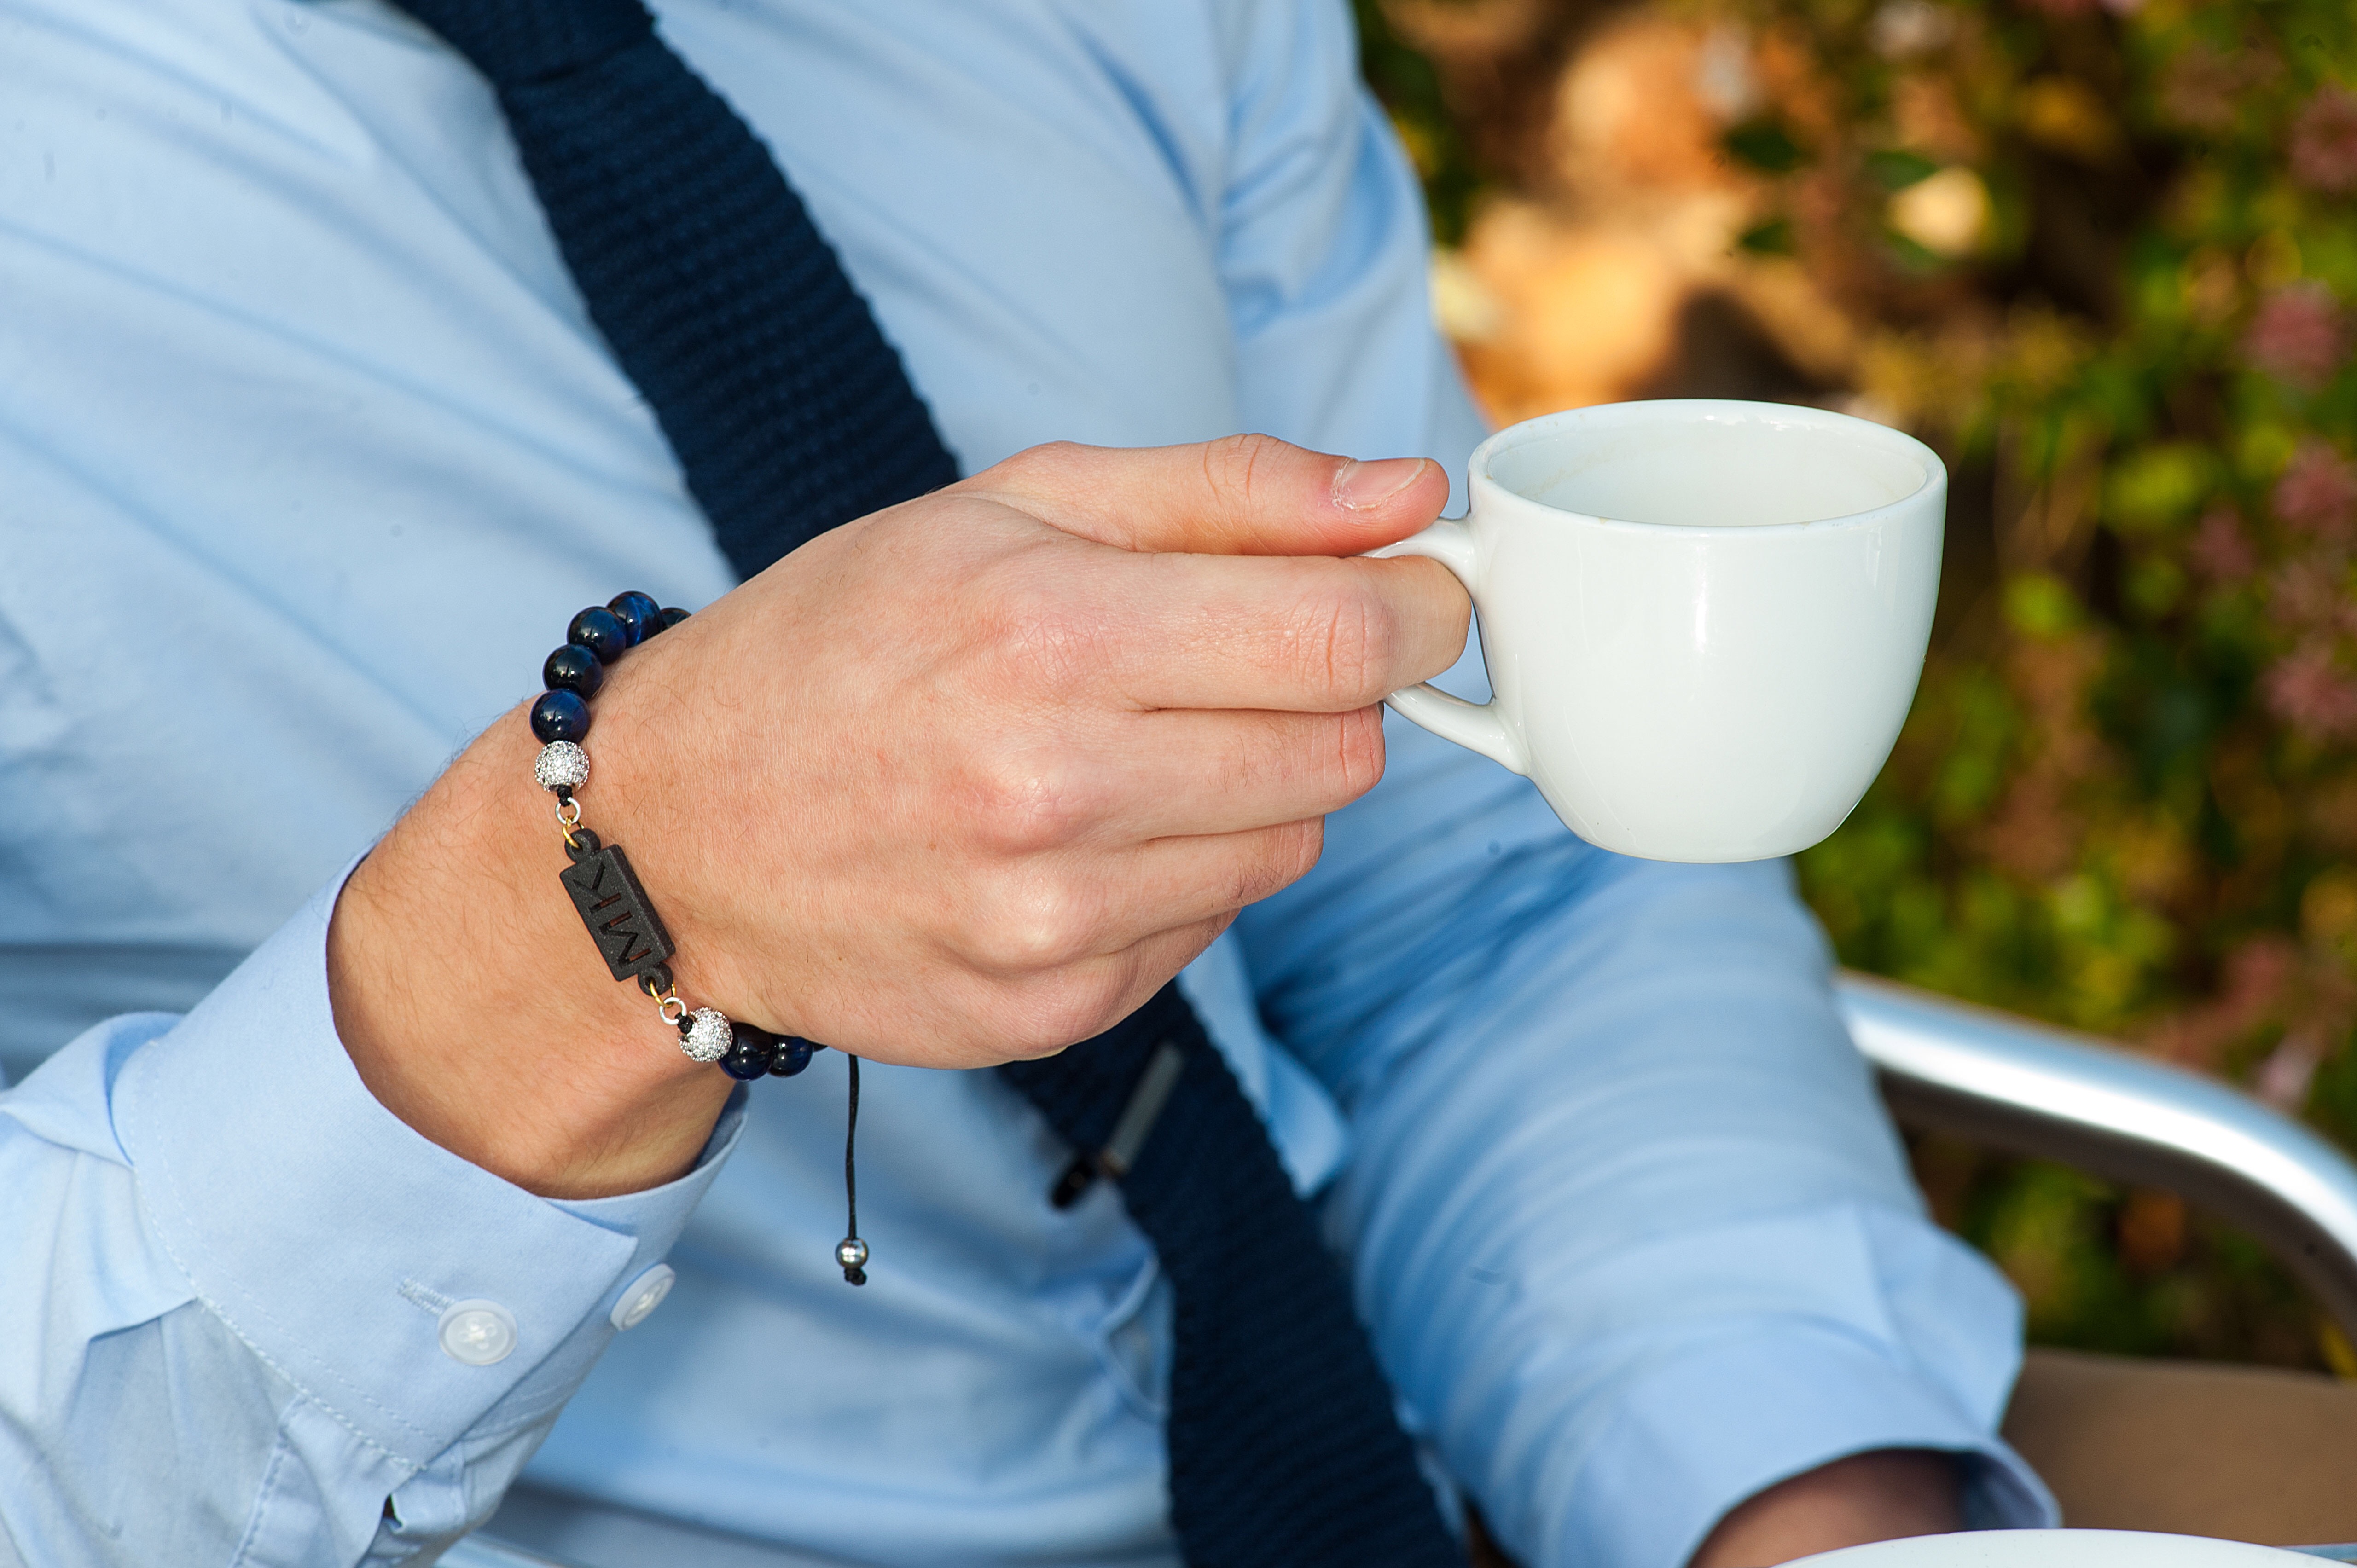 Man in smart suit wearing a bracelet drinking coffee